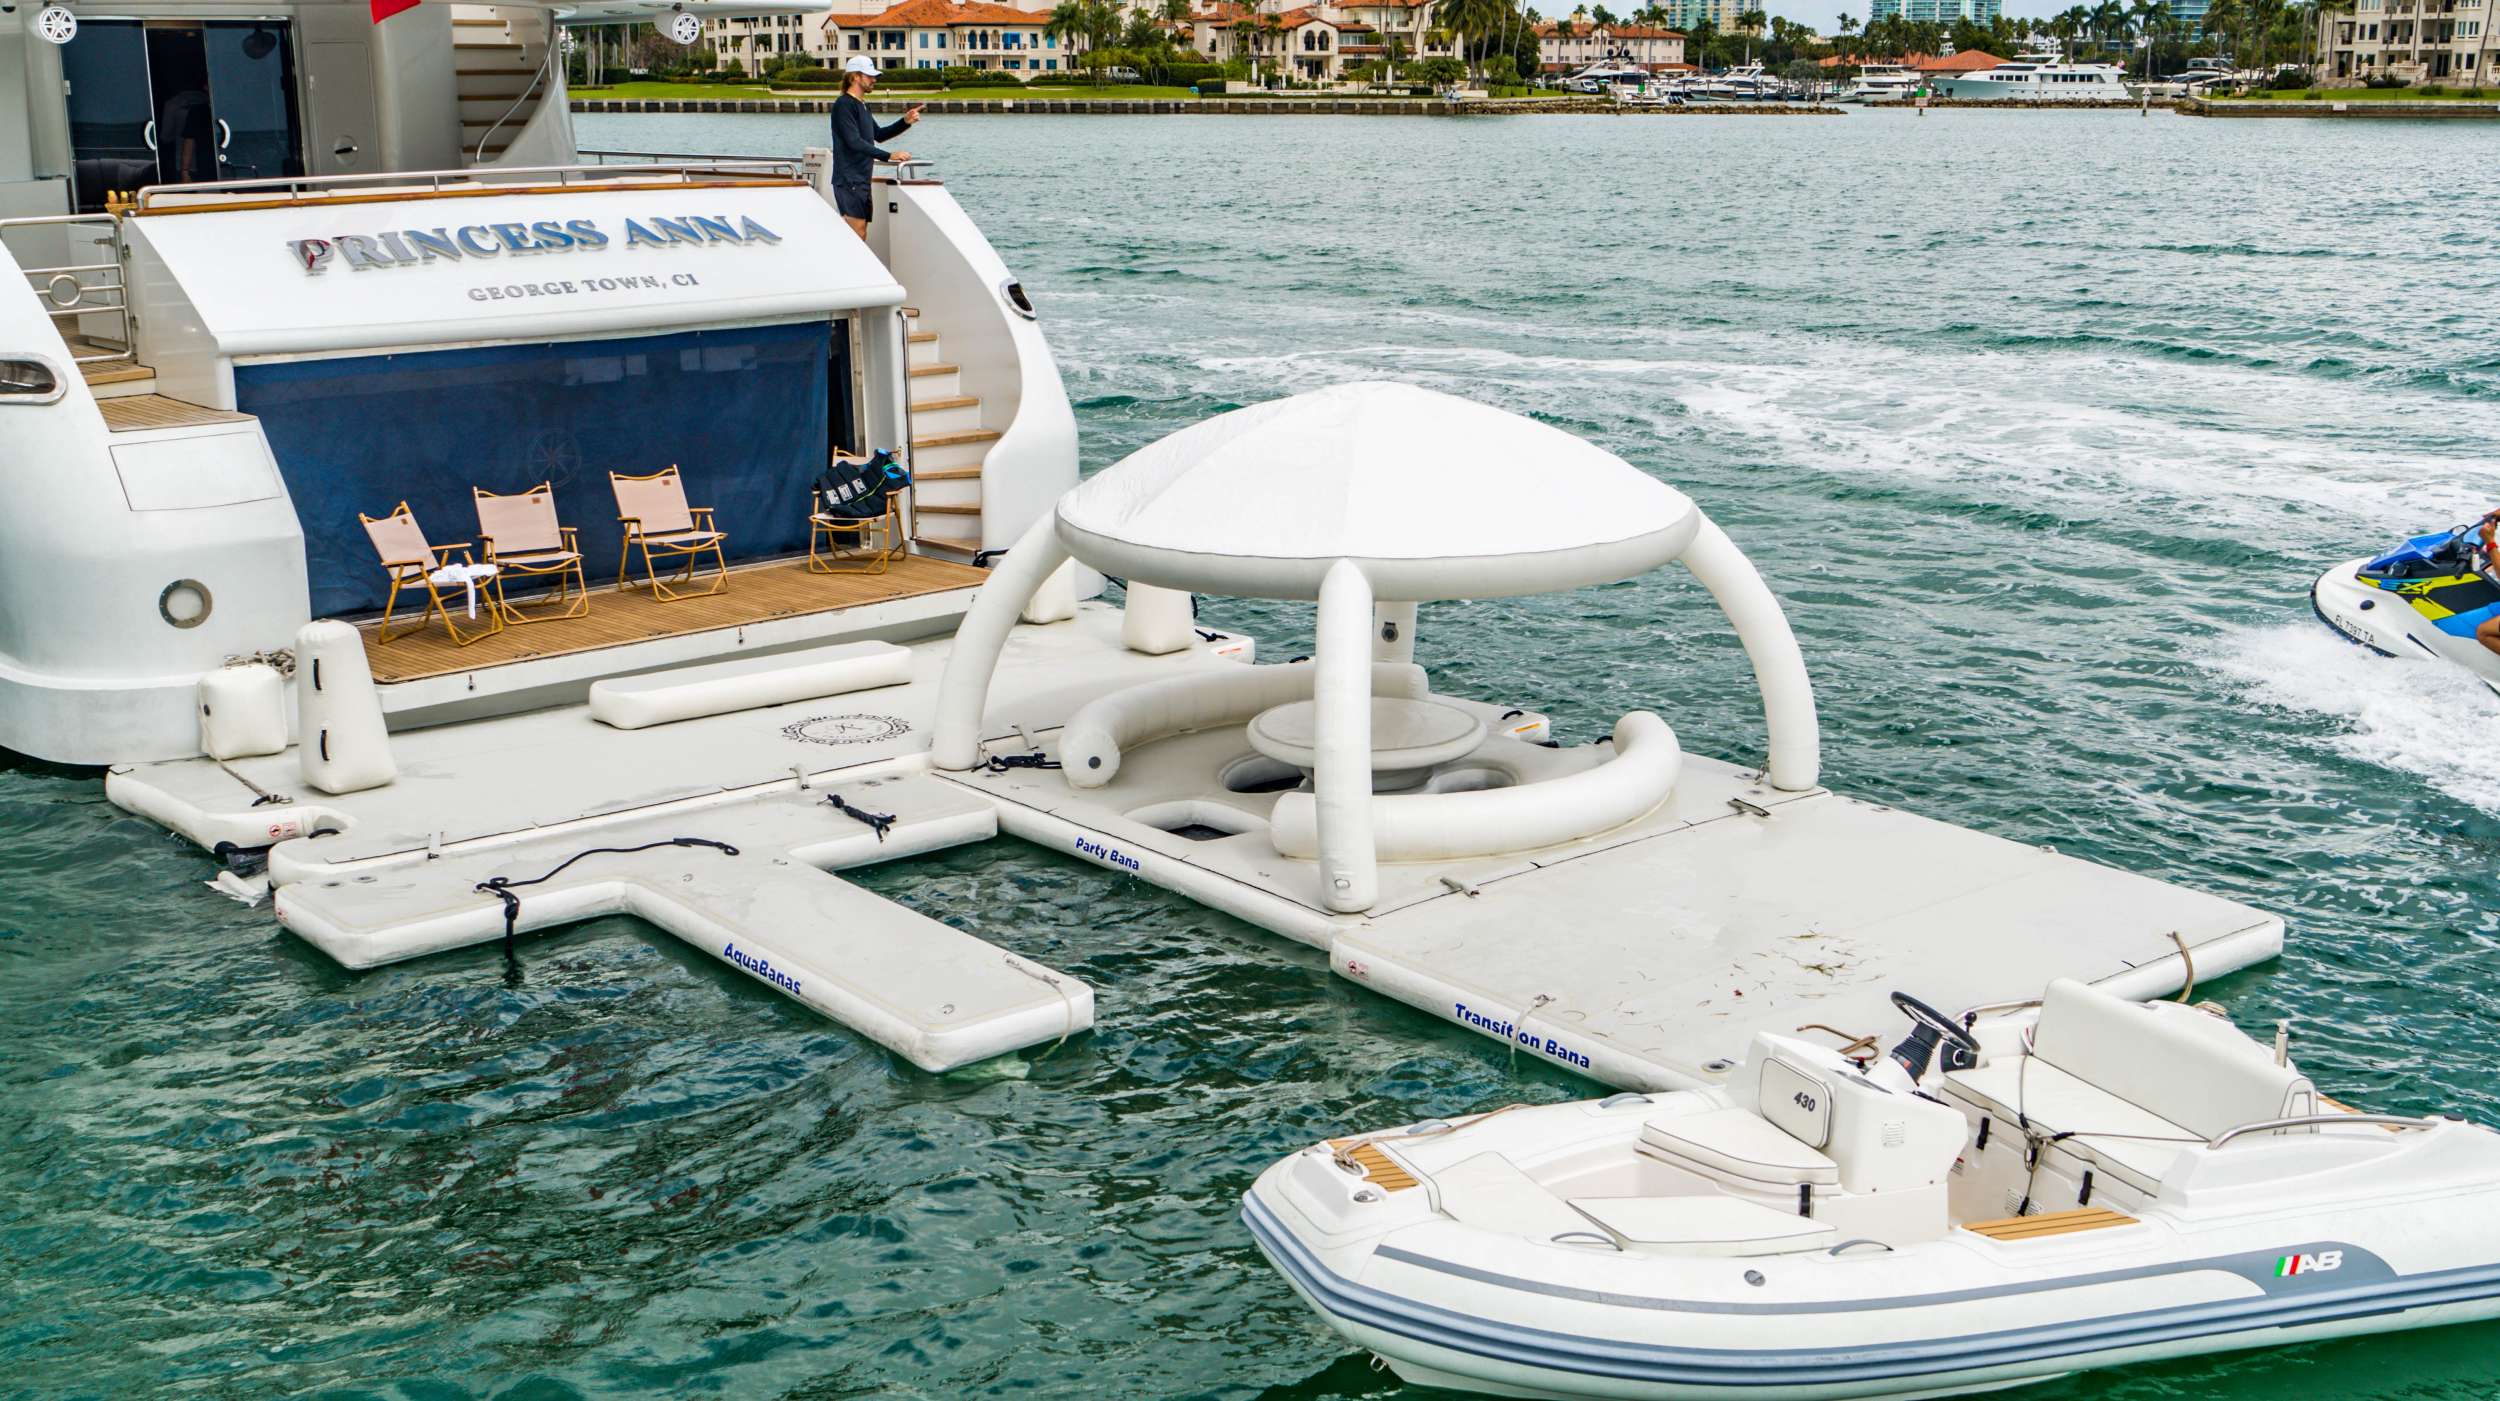 Princess Anna - Yacht Charter Florida & Boat hire in Florida & Bahamas 2